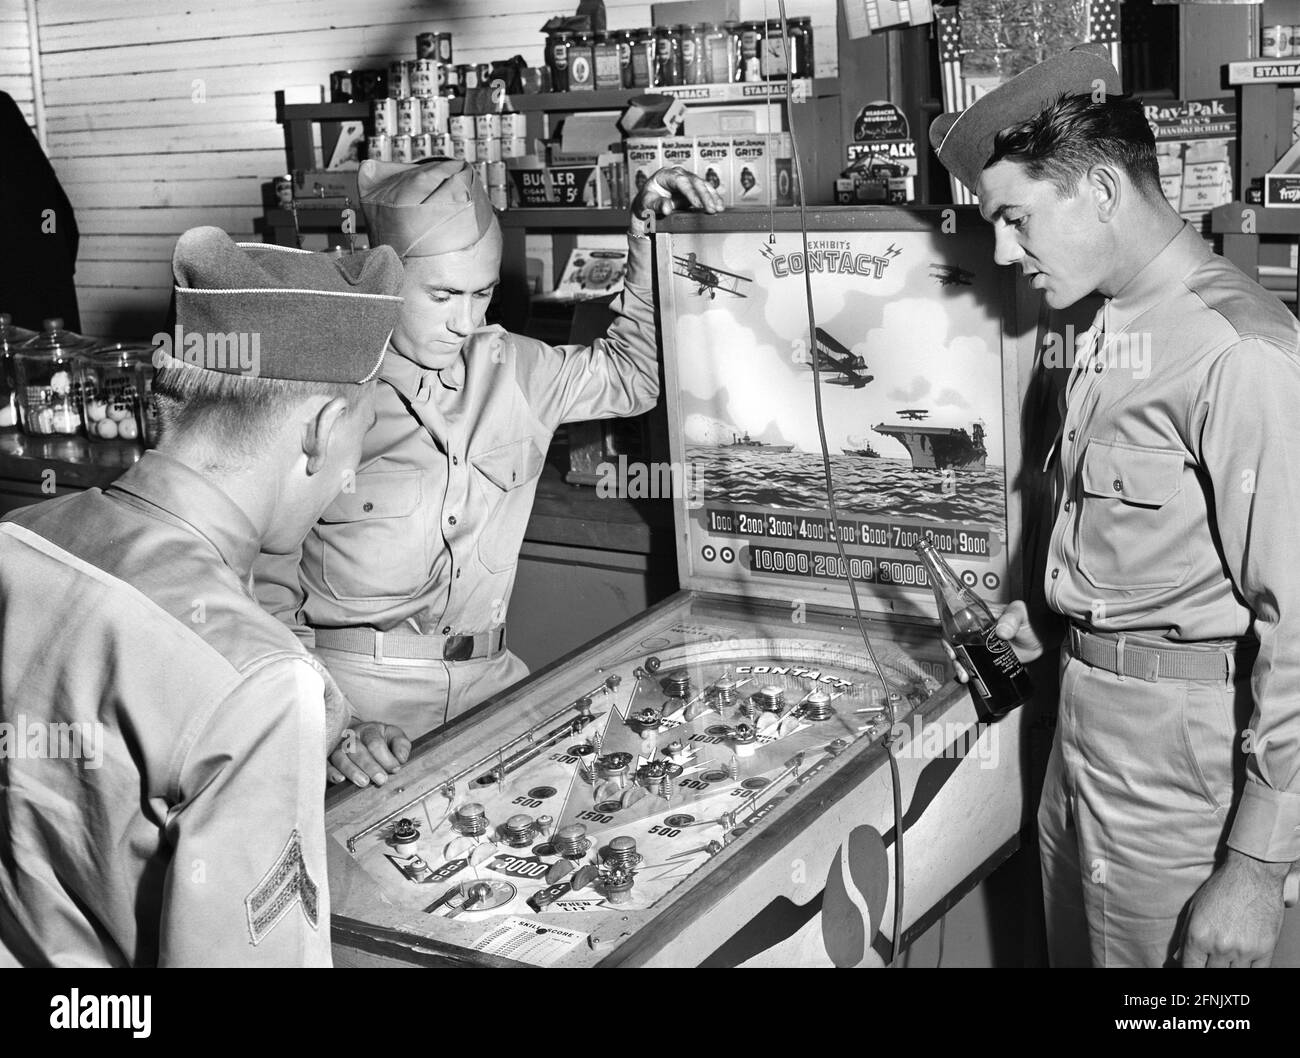 Tre soldati della base militare di Fort Benning a Pinball Machine nel negozio di campagna, Phenix City, Alabama, USA, Jack Delano, Ufficio delle informazioni di guerra degli Stati Uniti, maggio 1941 Foto Stock